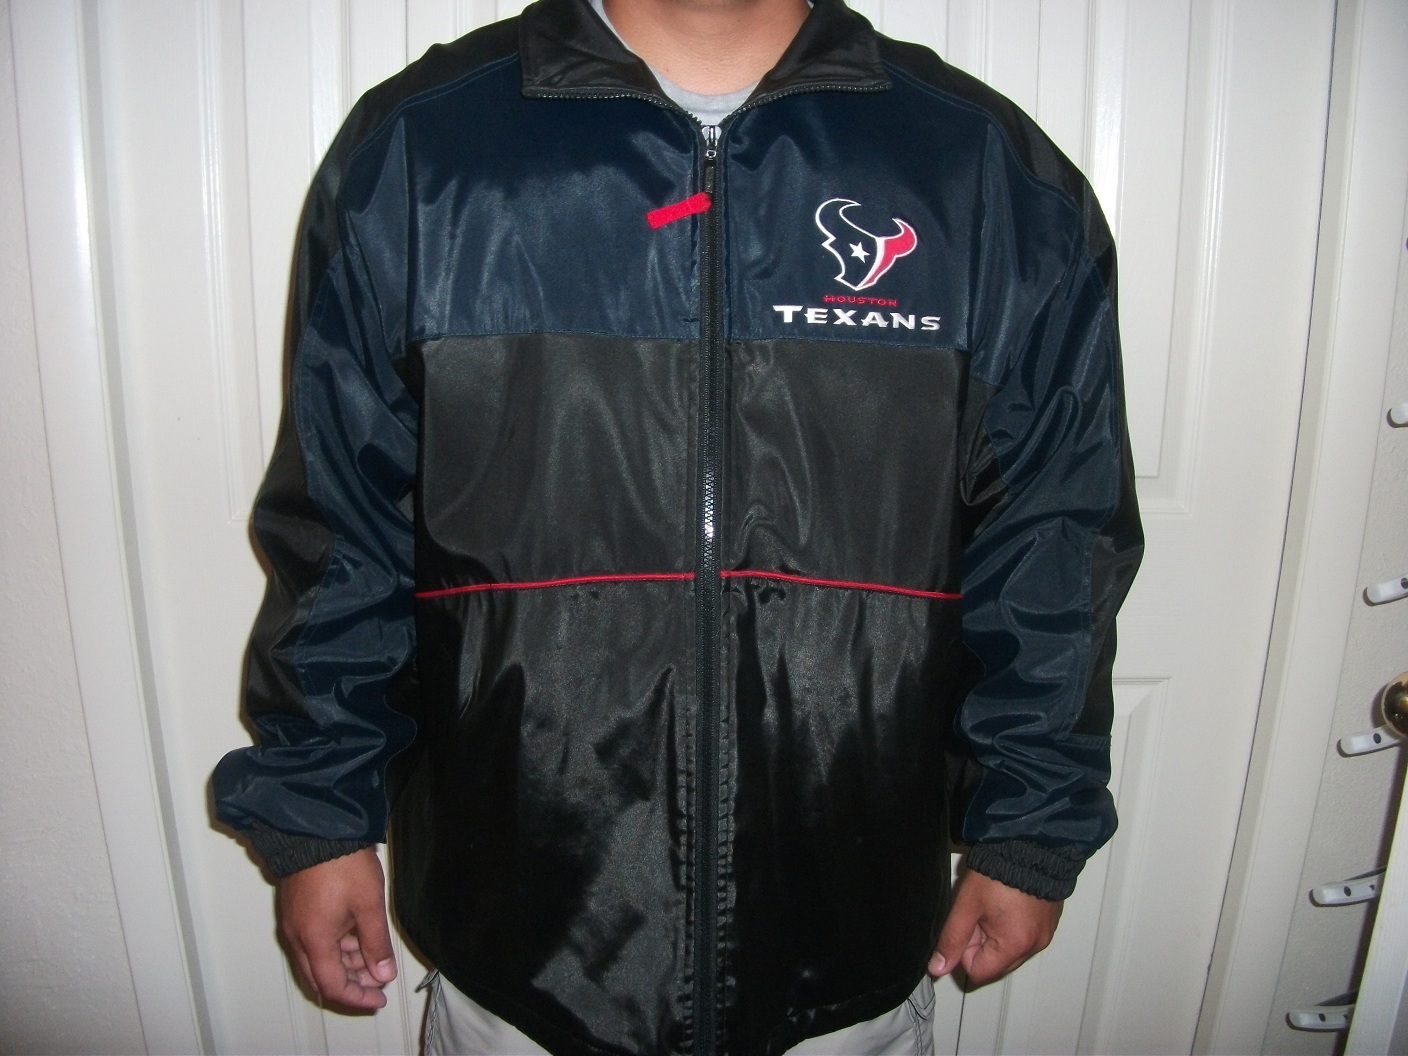 Houston TEXANS jacket